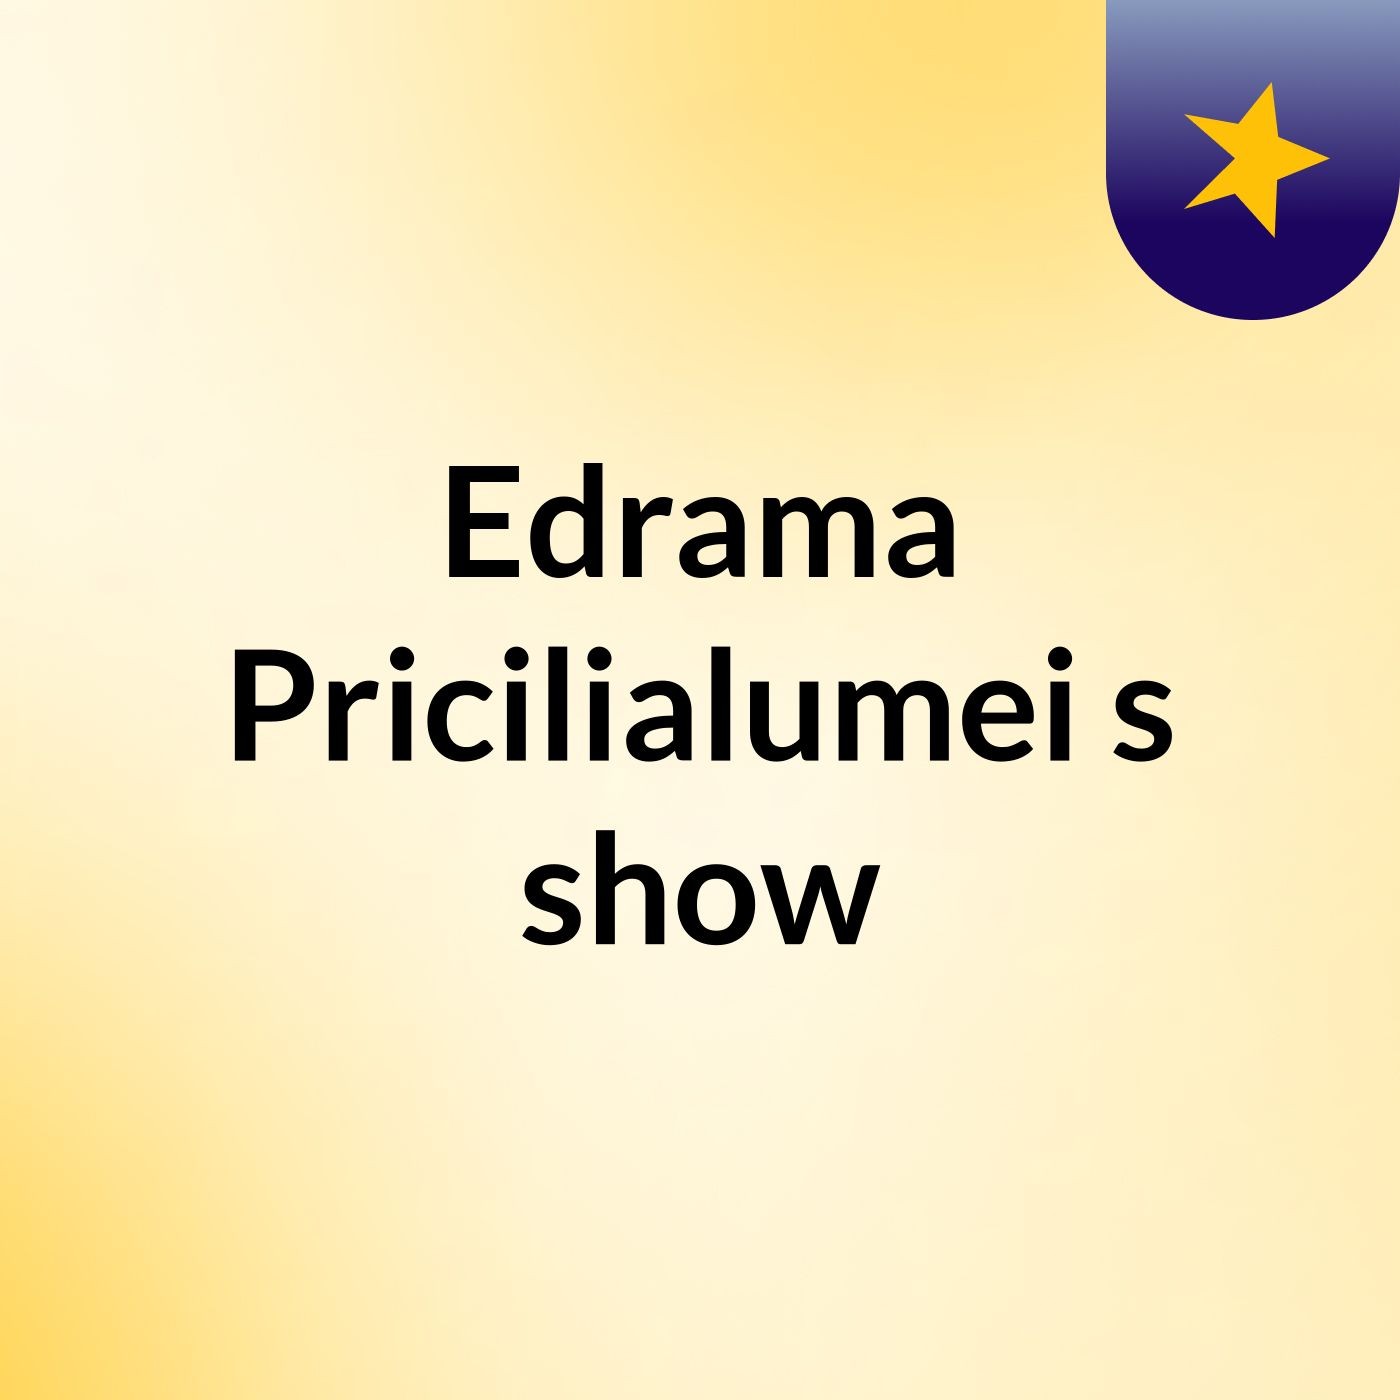 Edrama Pricilialumei's show